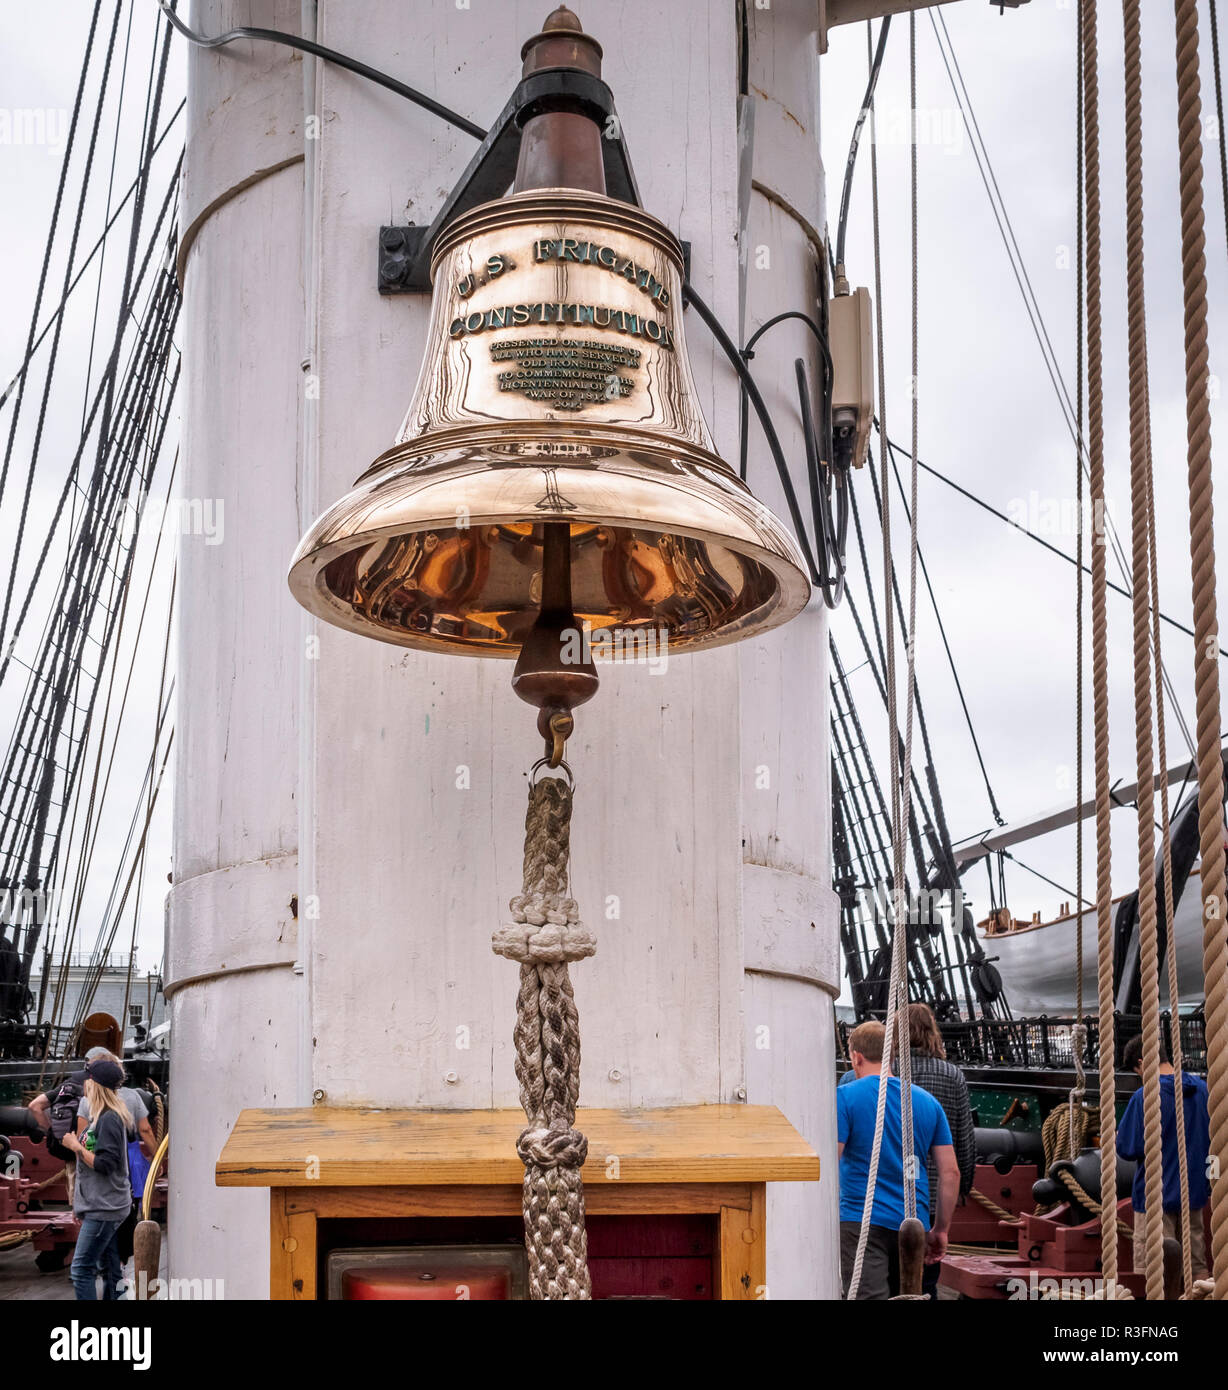 Une cloche de navire de guerre la plus ancienne du monde encore à flot, c.-à-d Consituttion - USS Constitution frégate américaine à Boston, États-Unis Banque D'Images